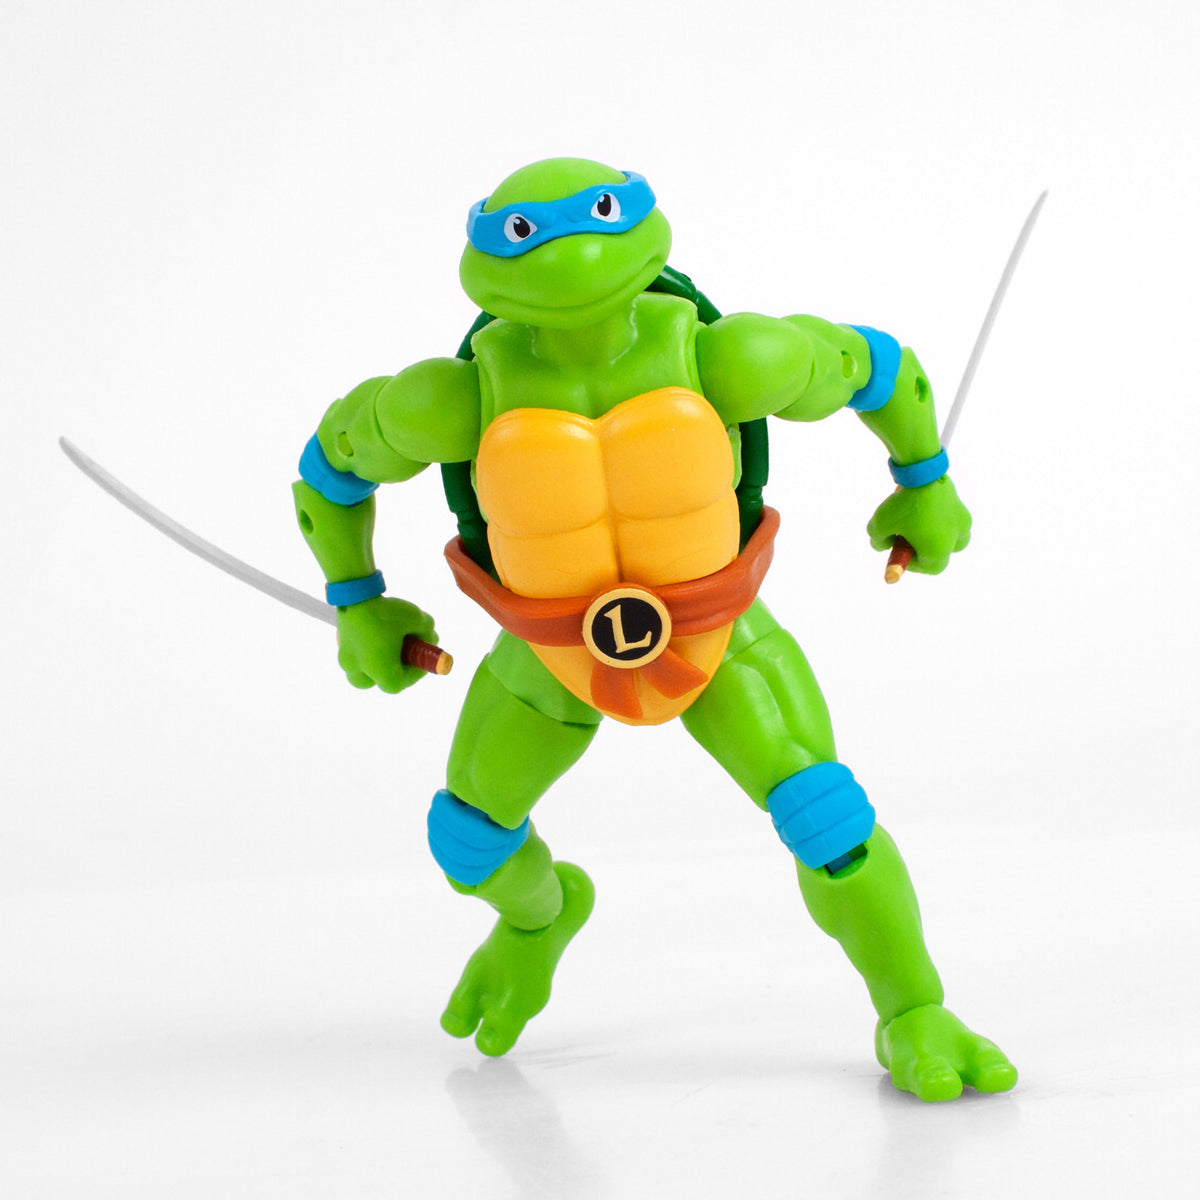 Teenage Mutant Ninja Turtles TMNT Donatello - The Loyal Subjects BST AXN 5  Action Figure